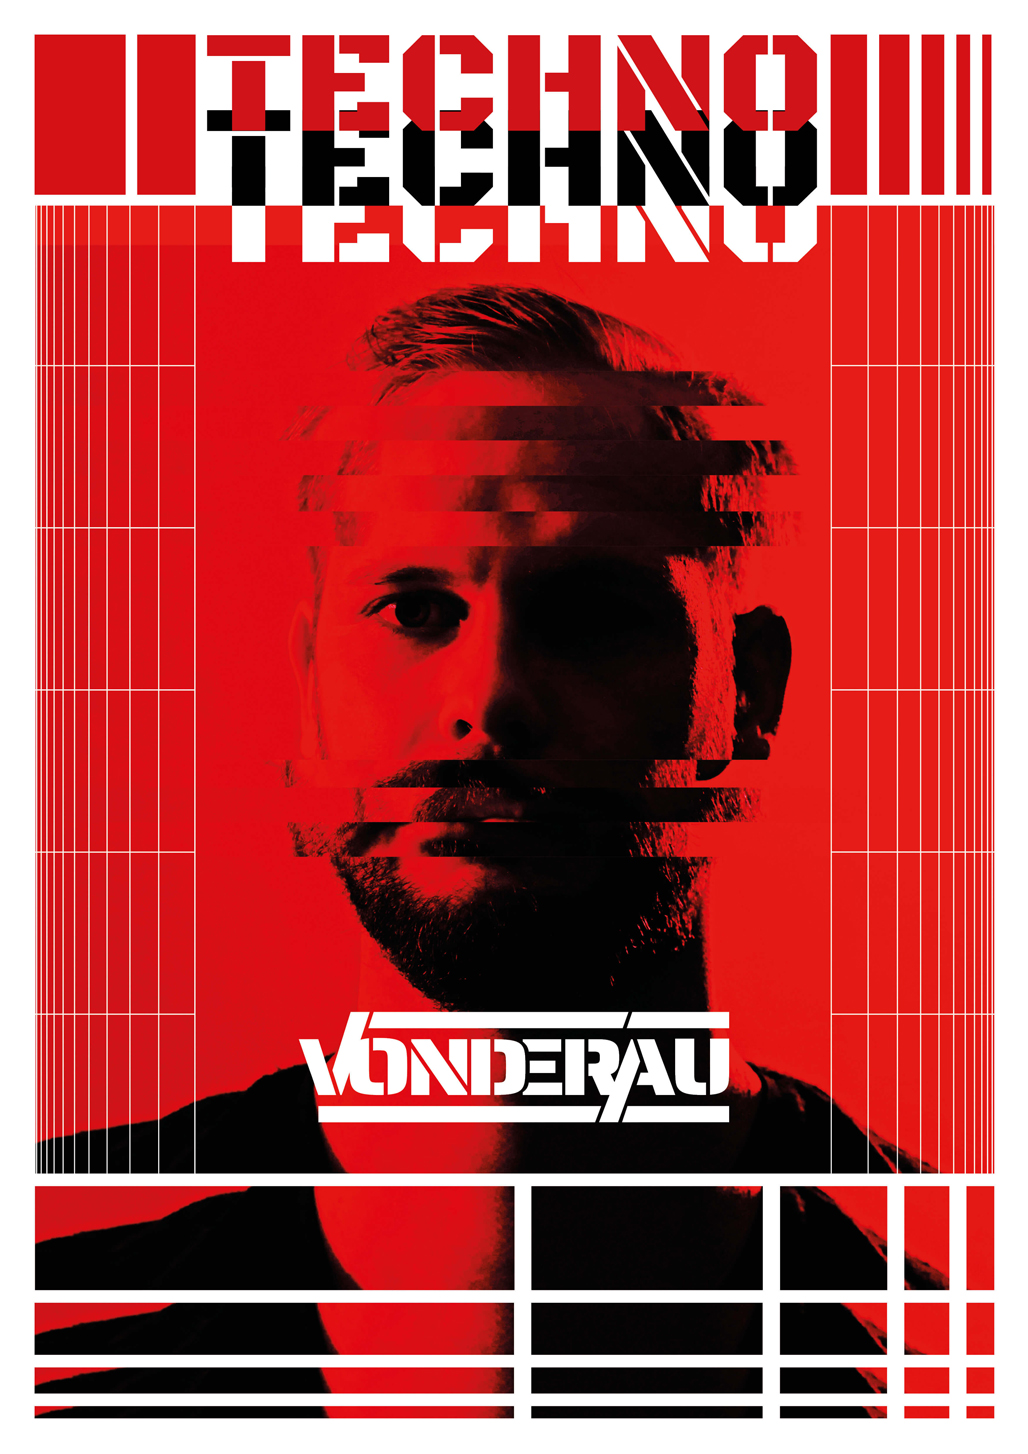 Vonderau - Techno DJ/Producer